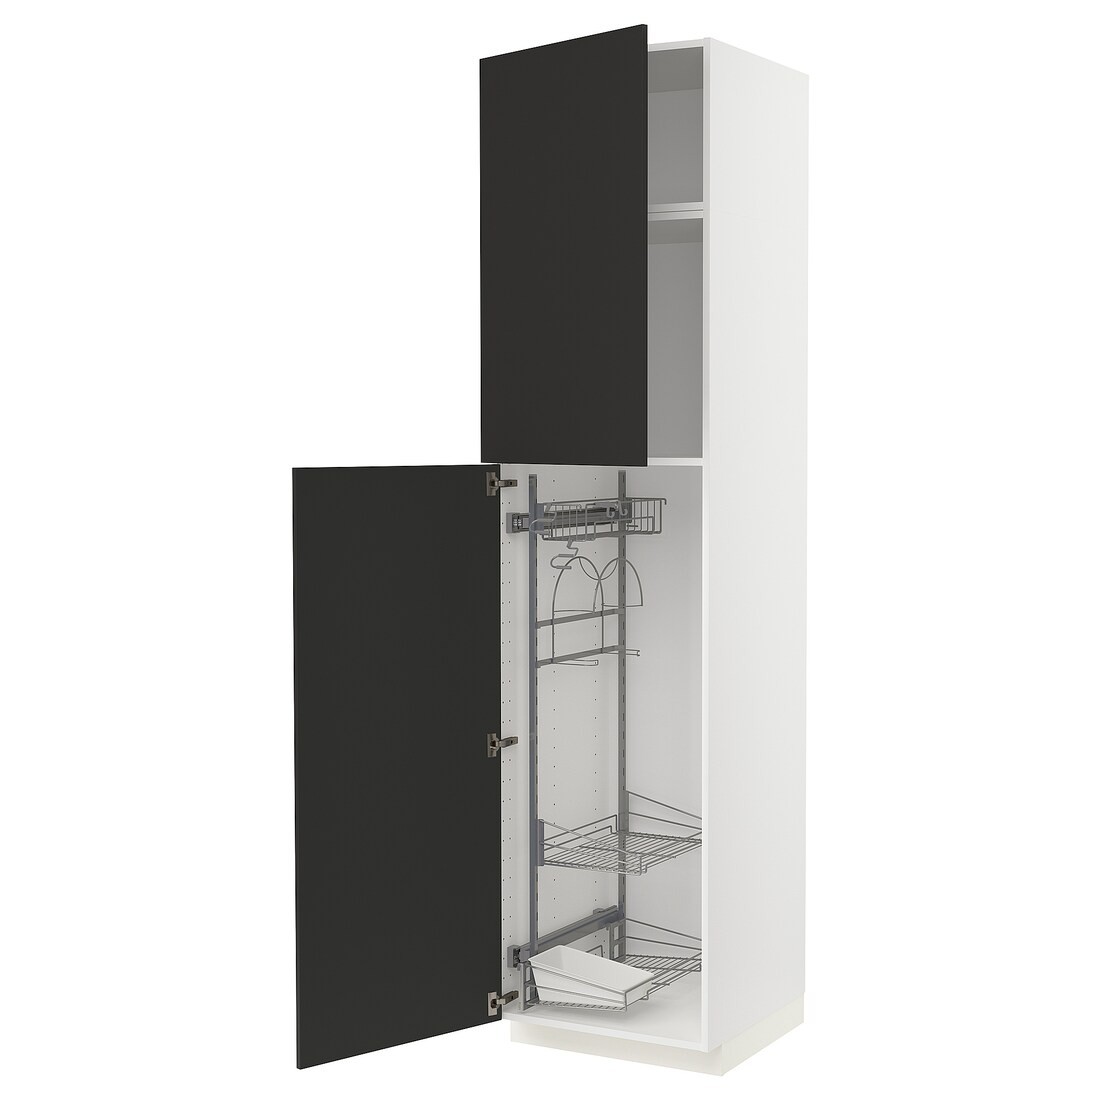 METOD МЕТОД Высокий шкаф с отделением для аксессуаров для уборки, белый / Nickebo матовый антрацит, 60x60x240 см